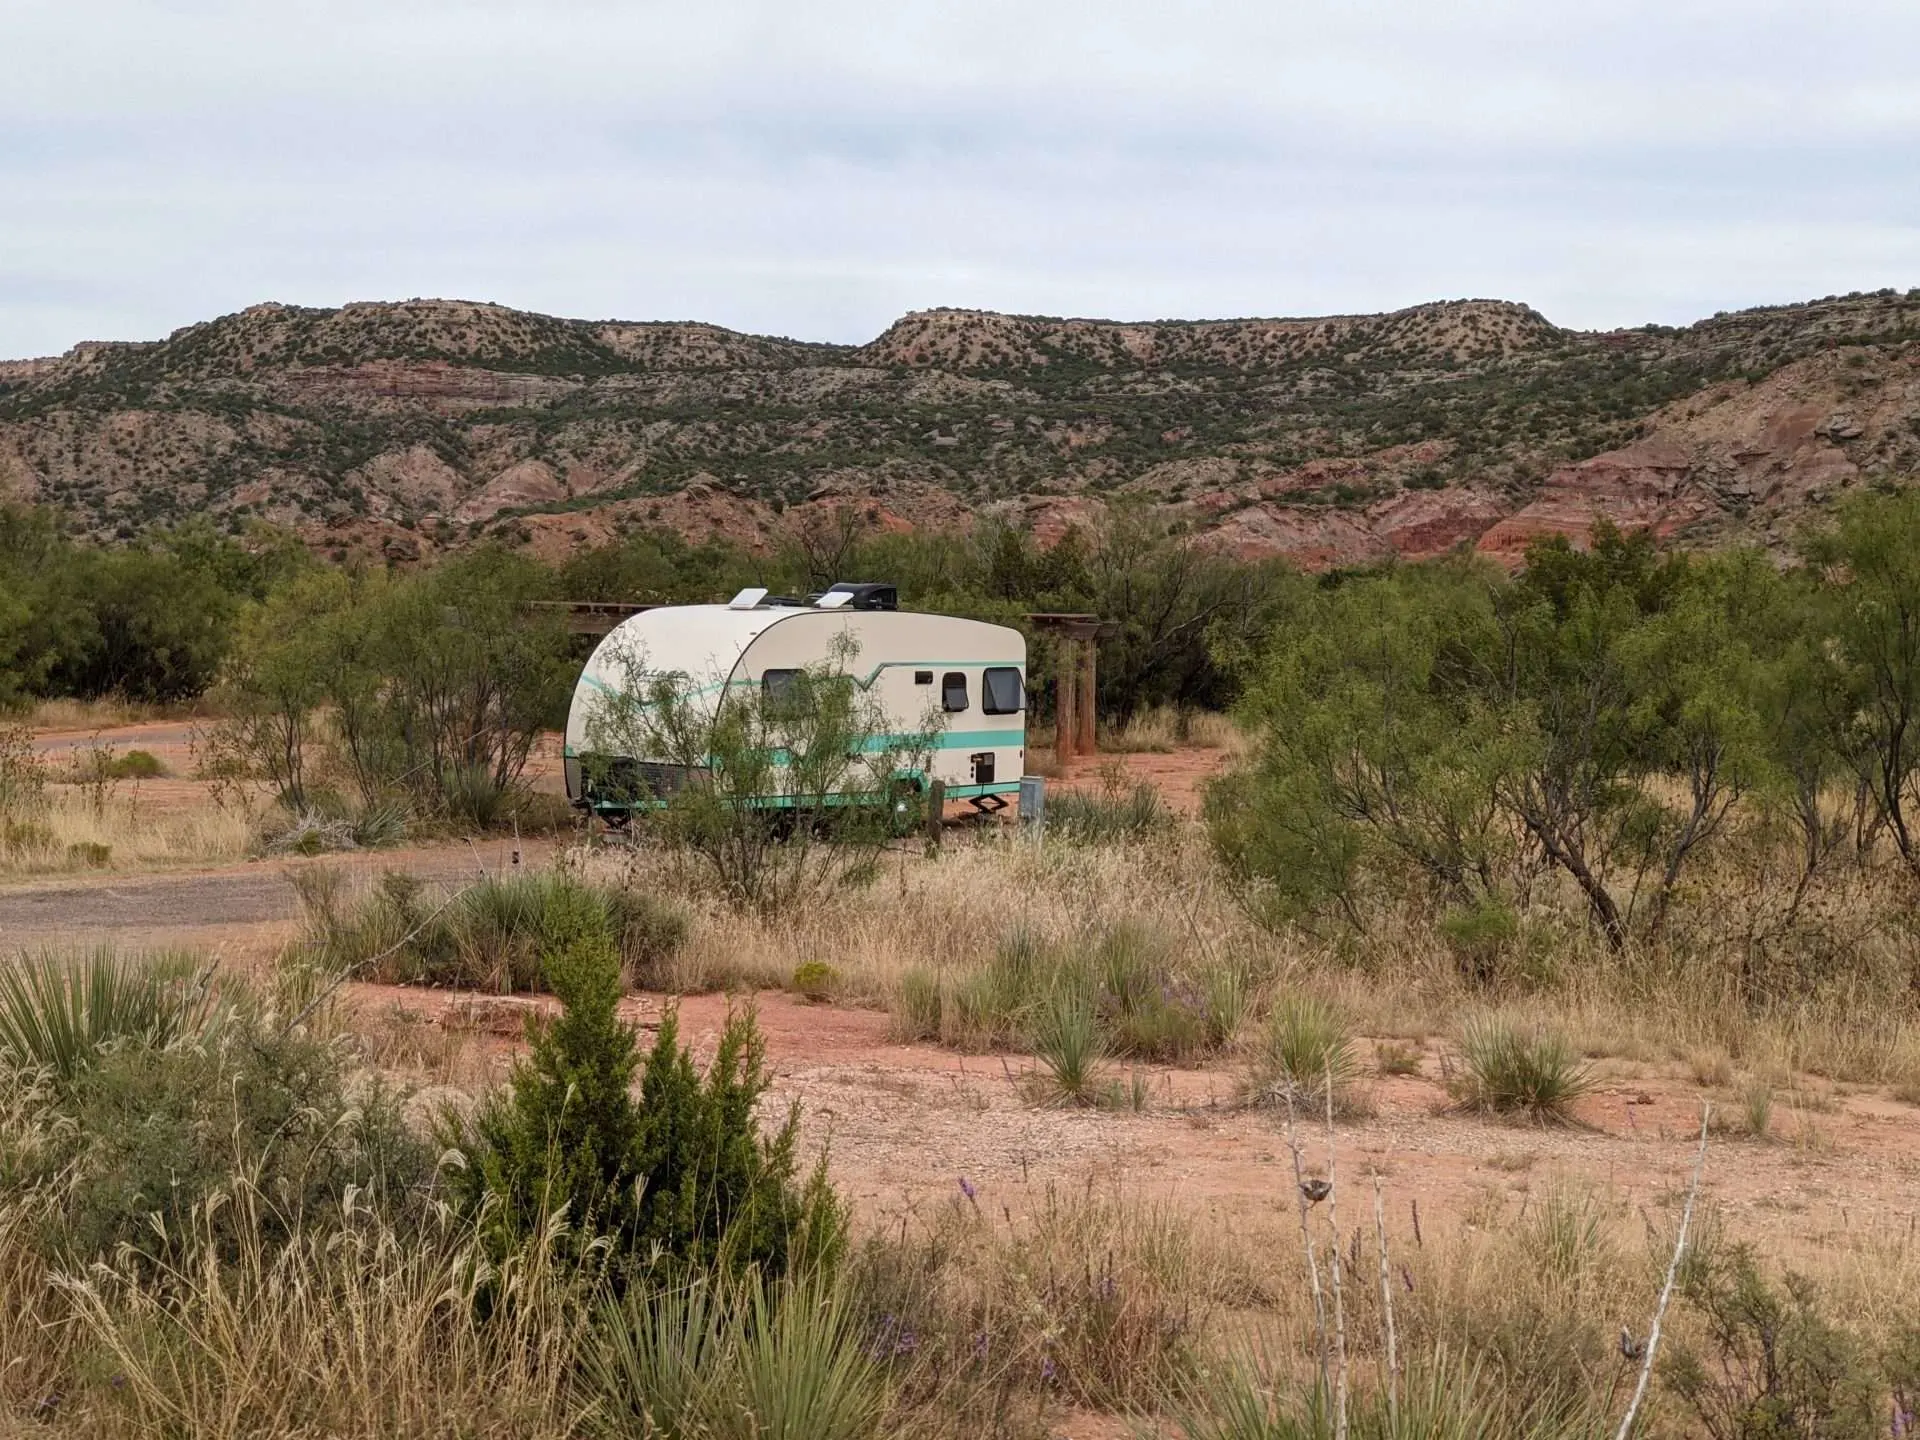 Travel trailer parked in desert